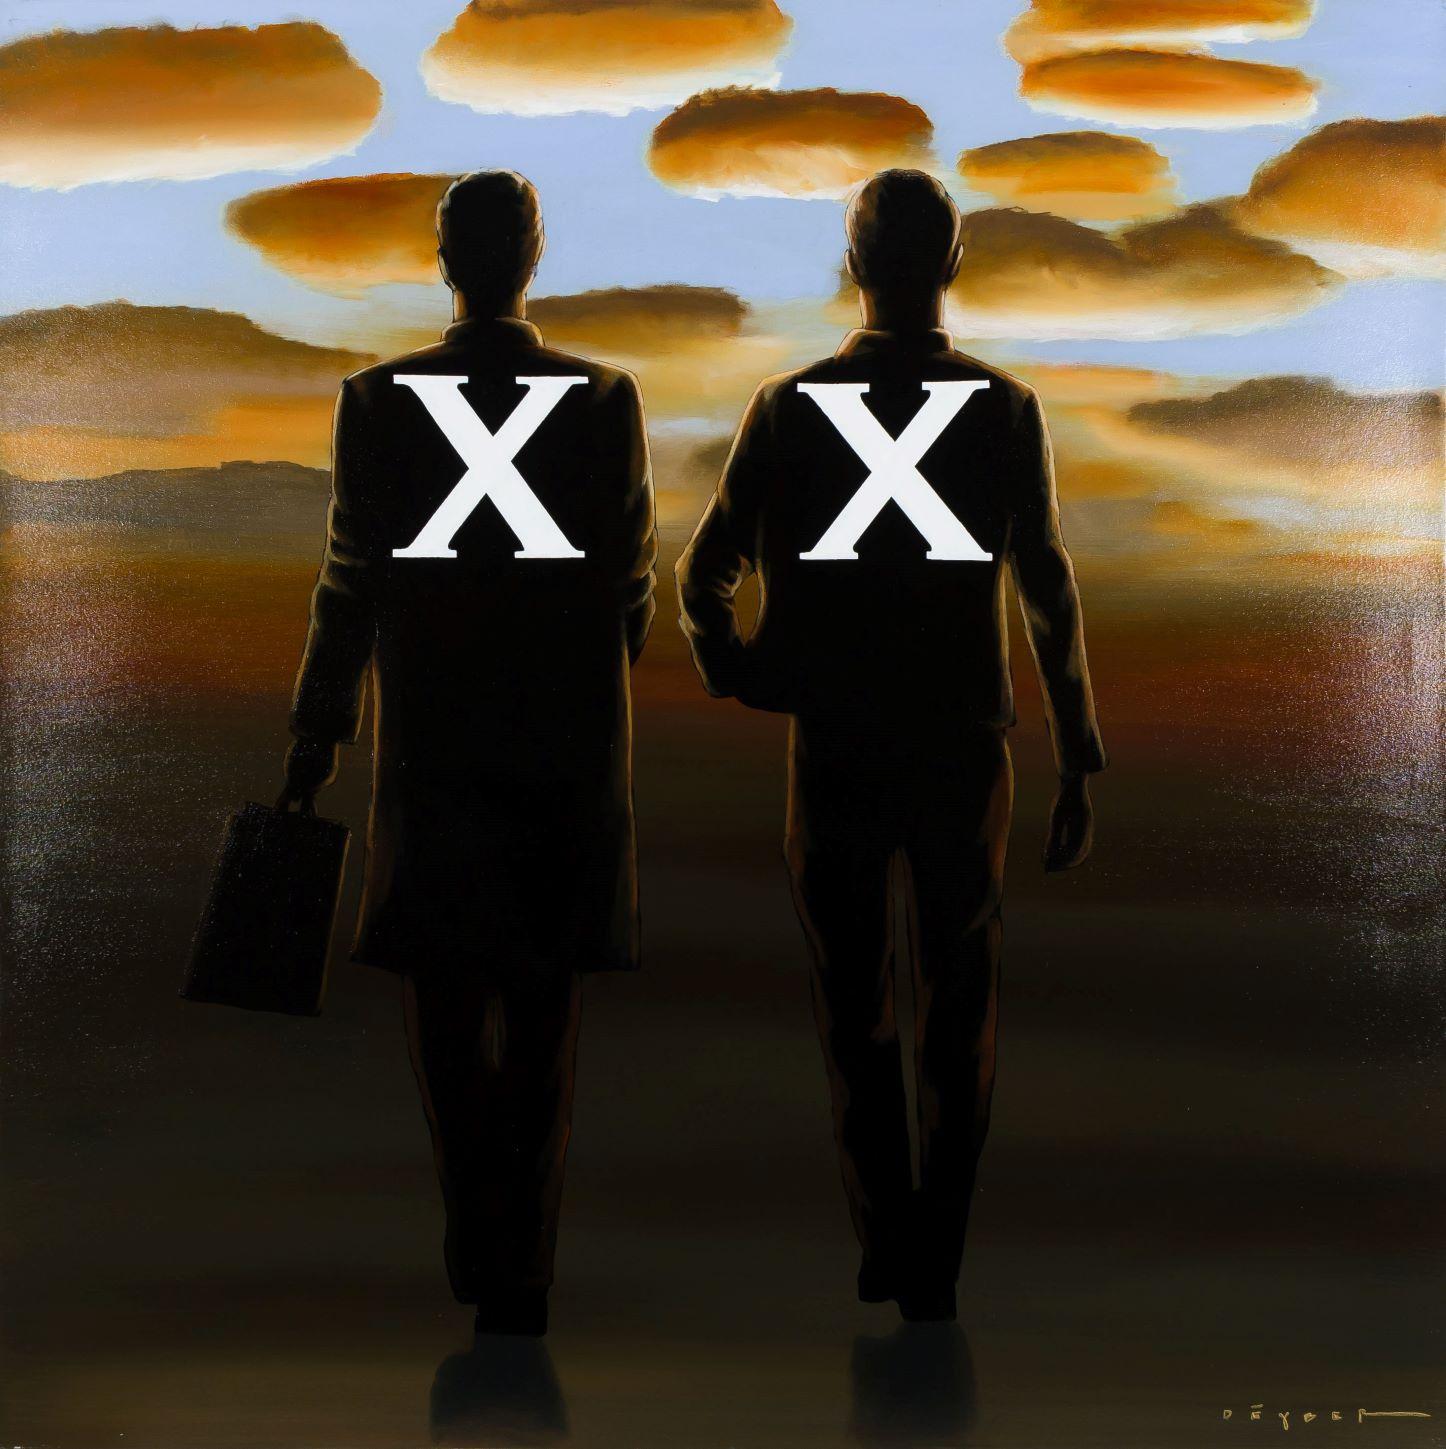 X-Men - Painting by Robert Deyber 